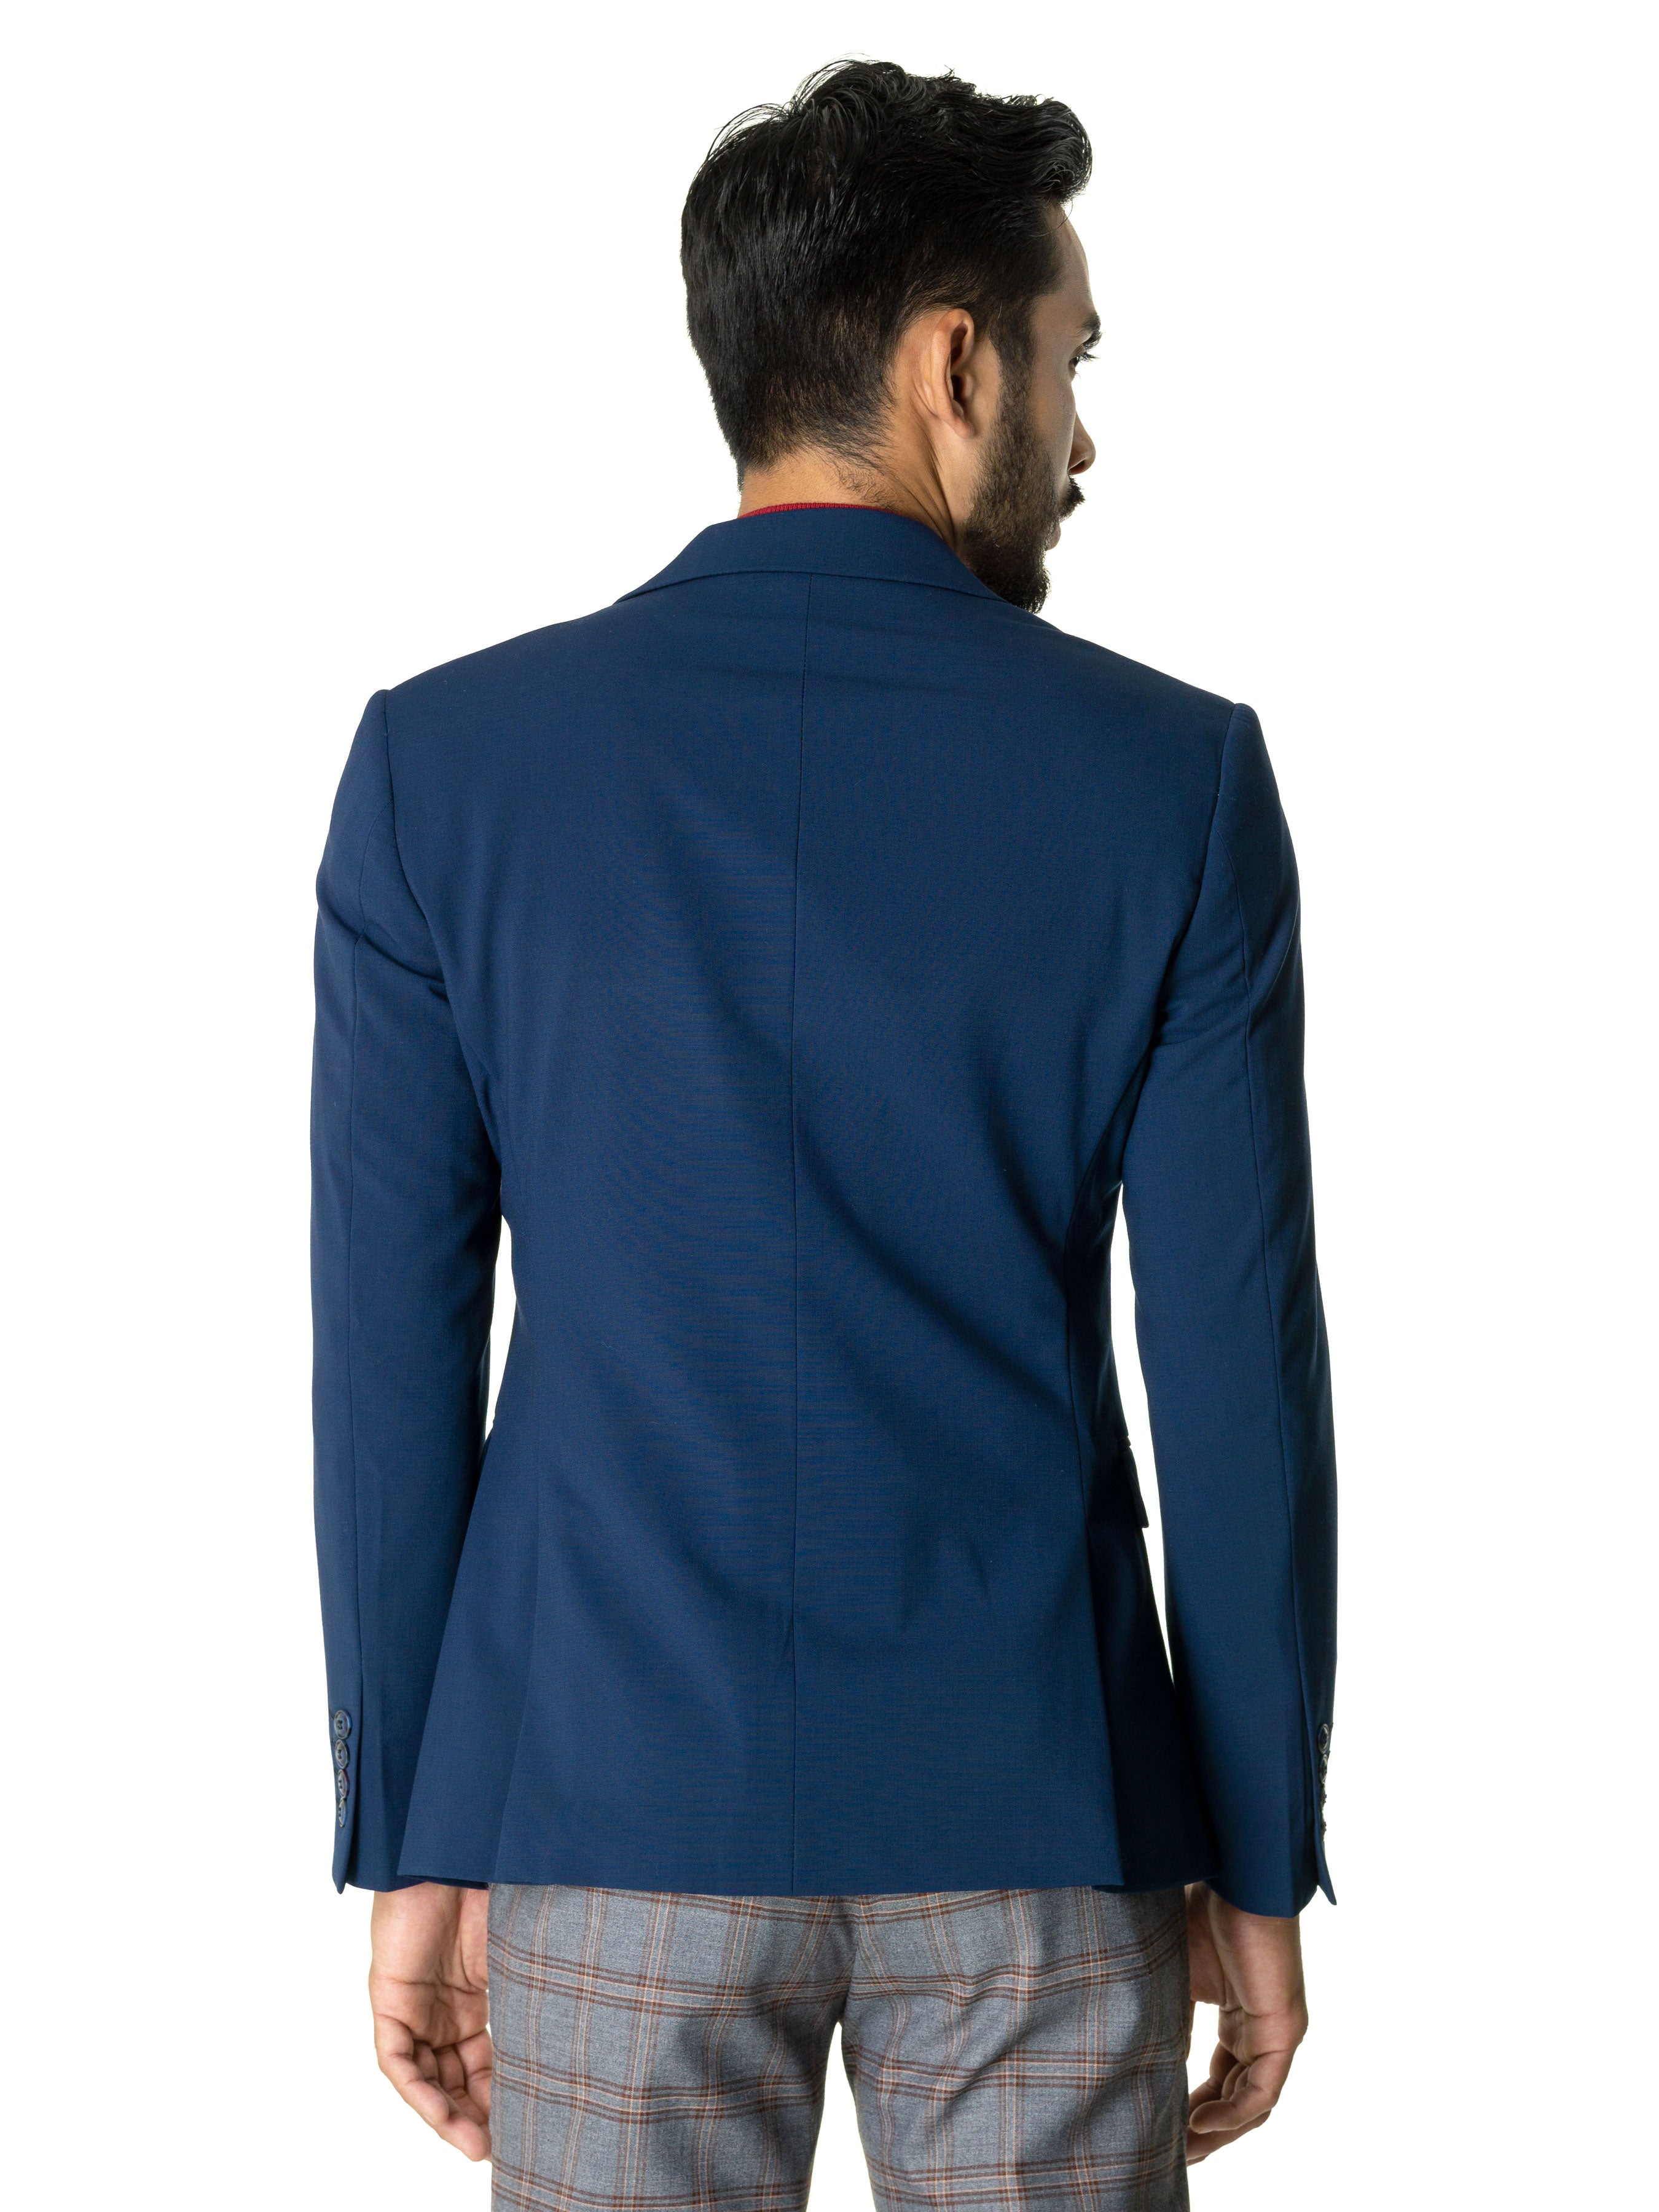 Single Breasted Suit Blazer - Royal Blue Plain (Notch Lapel) - Zeve Shoes